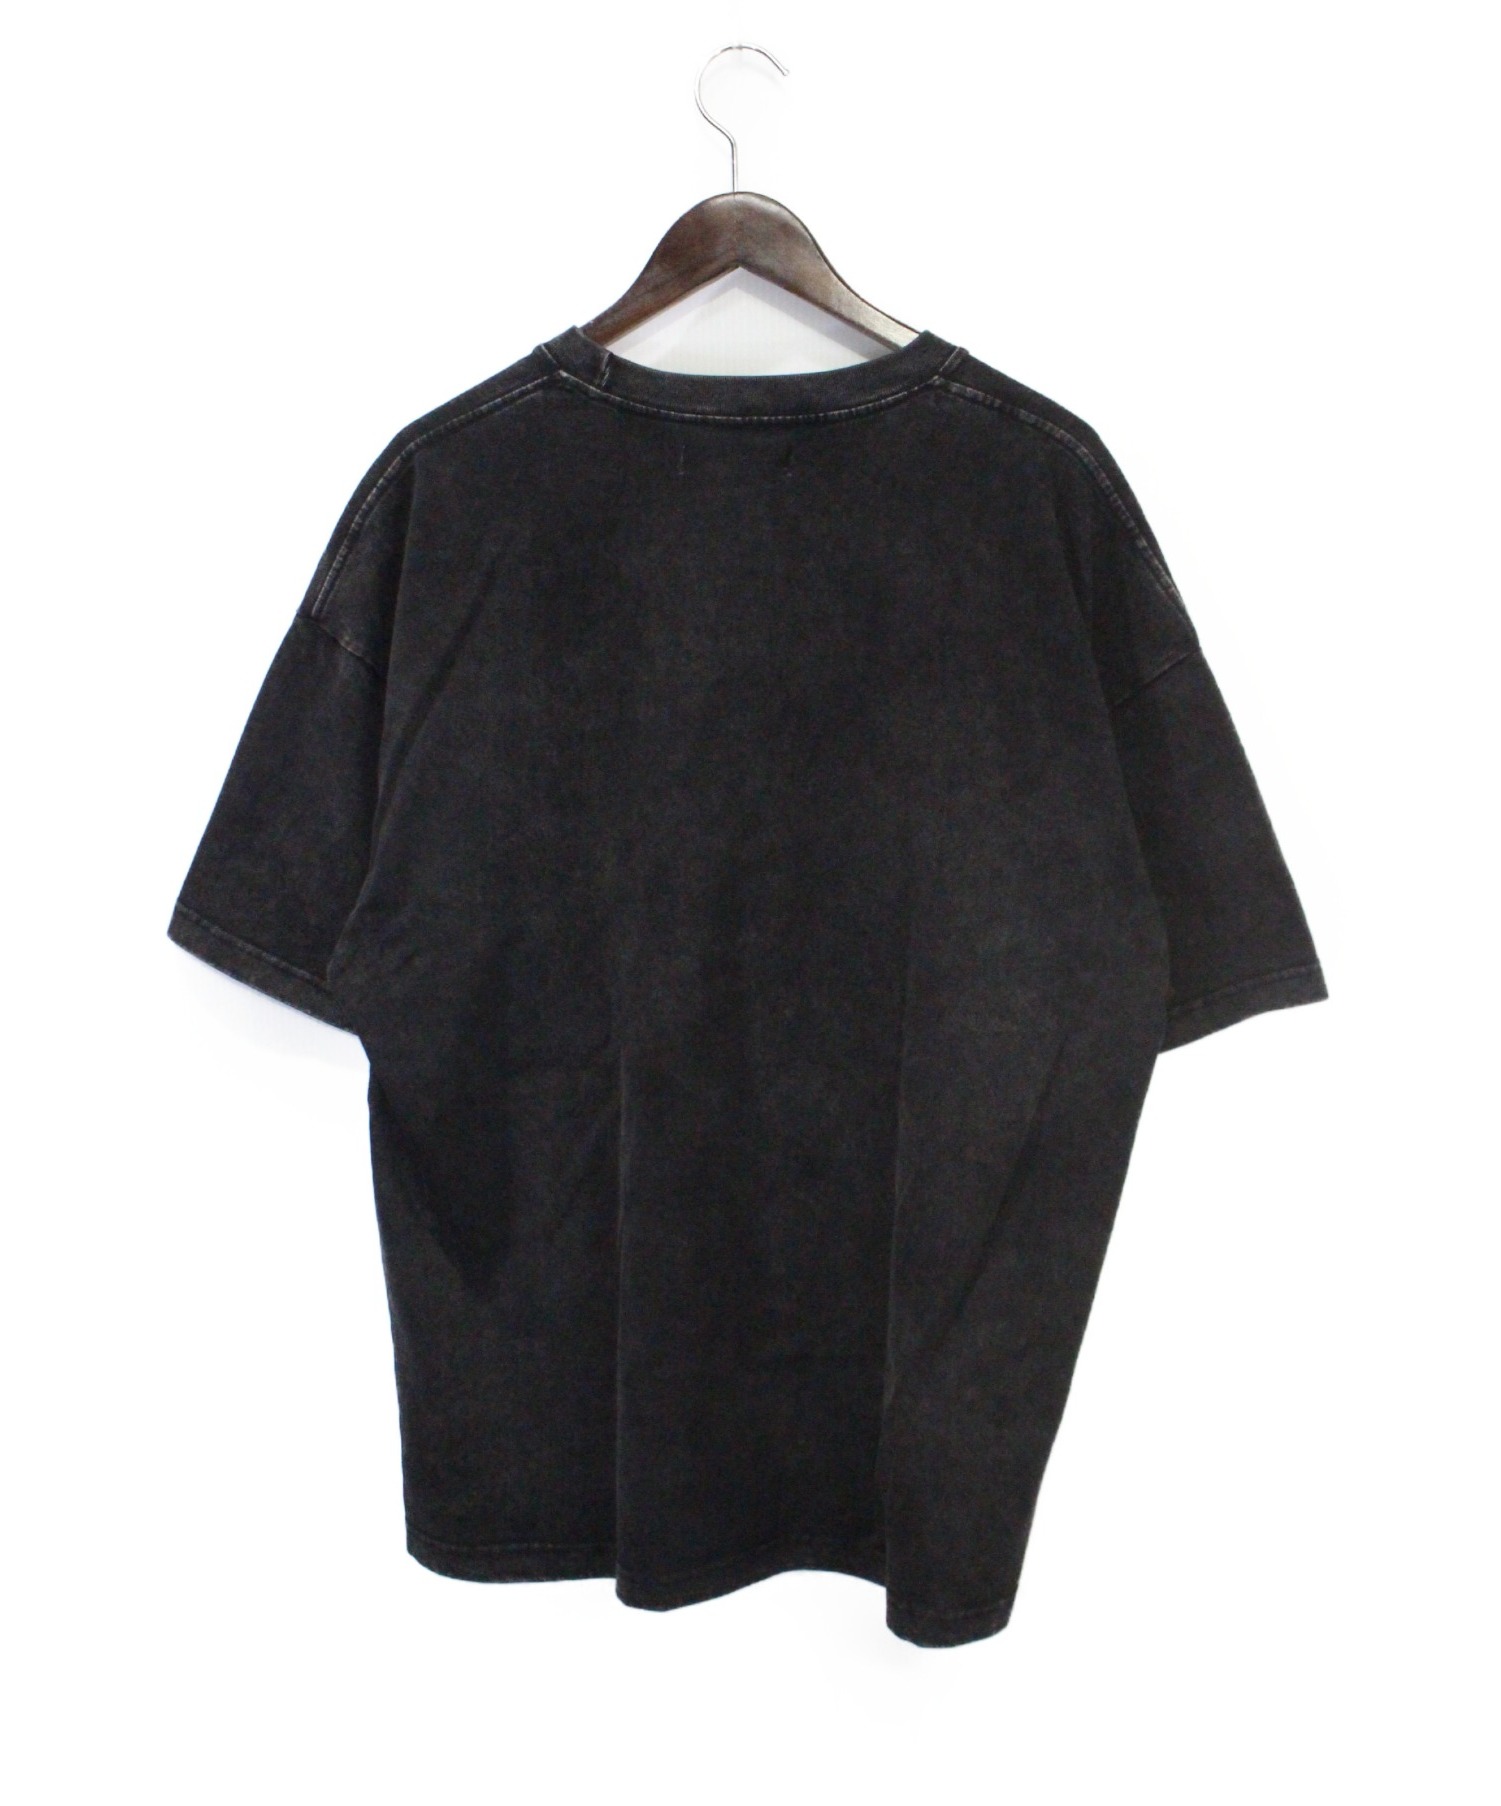 SALUTE (サルーテ) Tシャツ ブラック サイズ:S